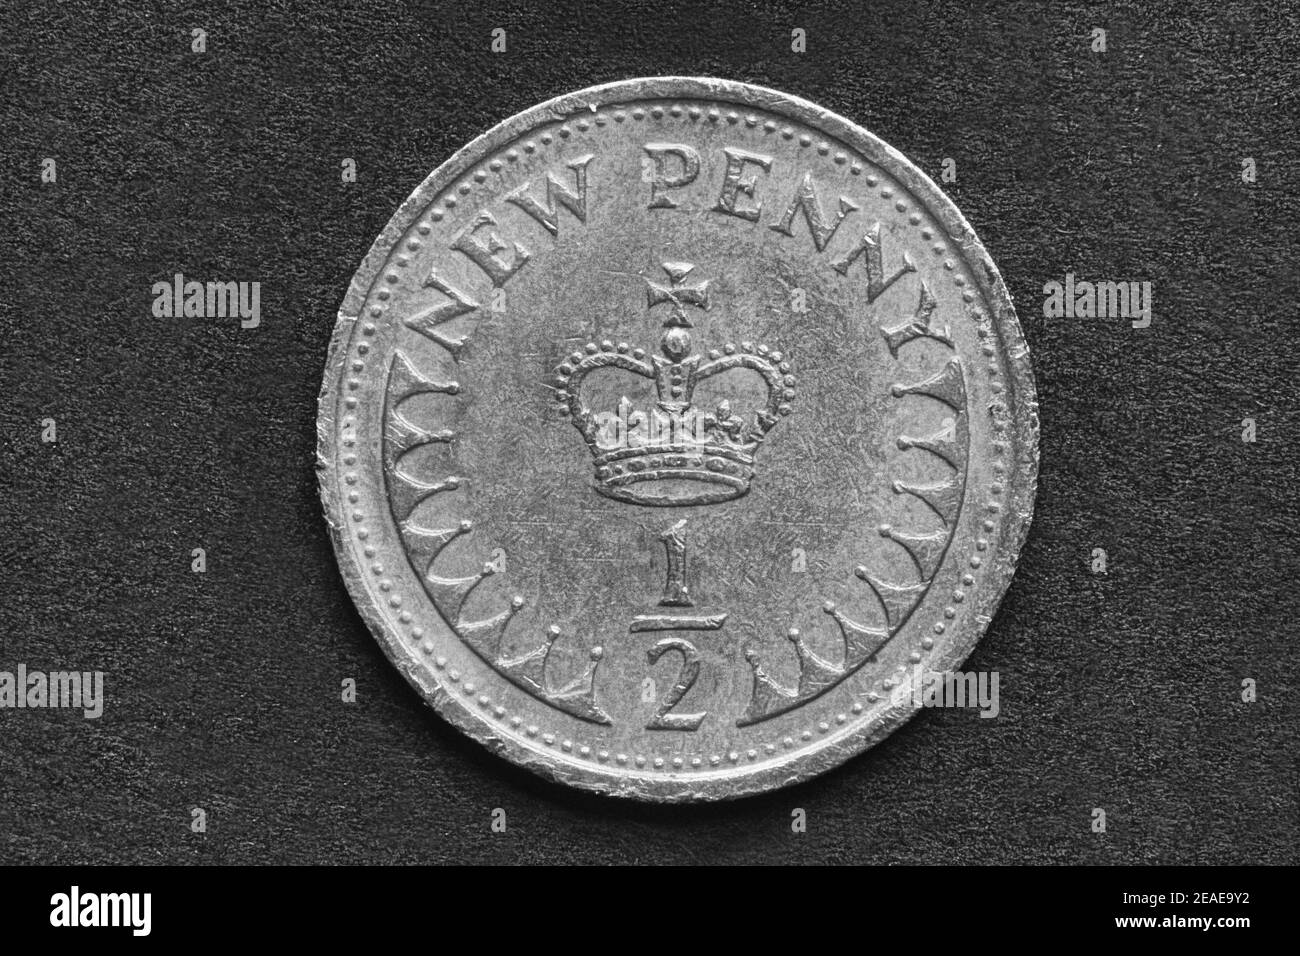 Foto Reino Unido ½ nuevo centavo, 1971, moneda Foto de stock